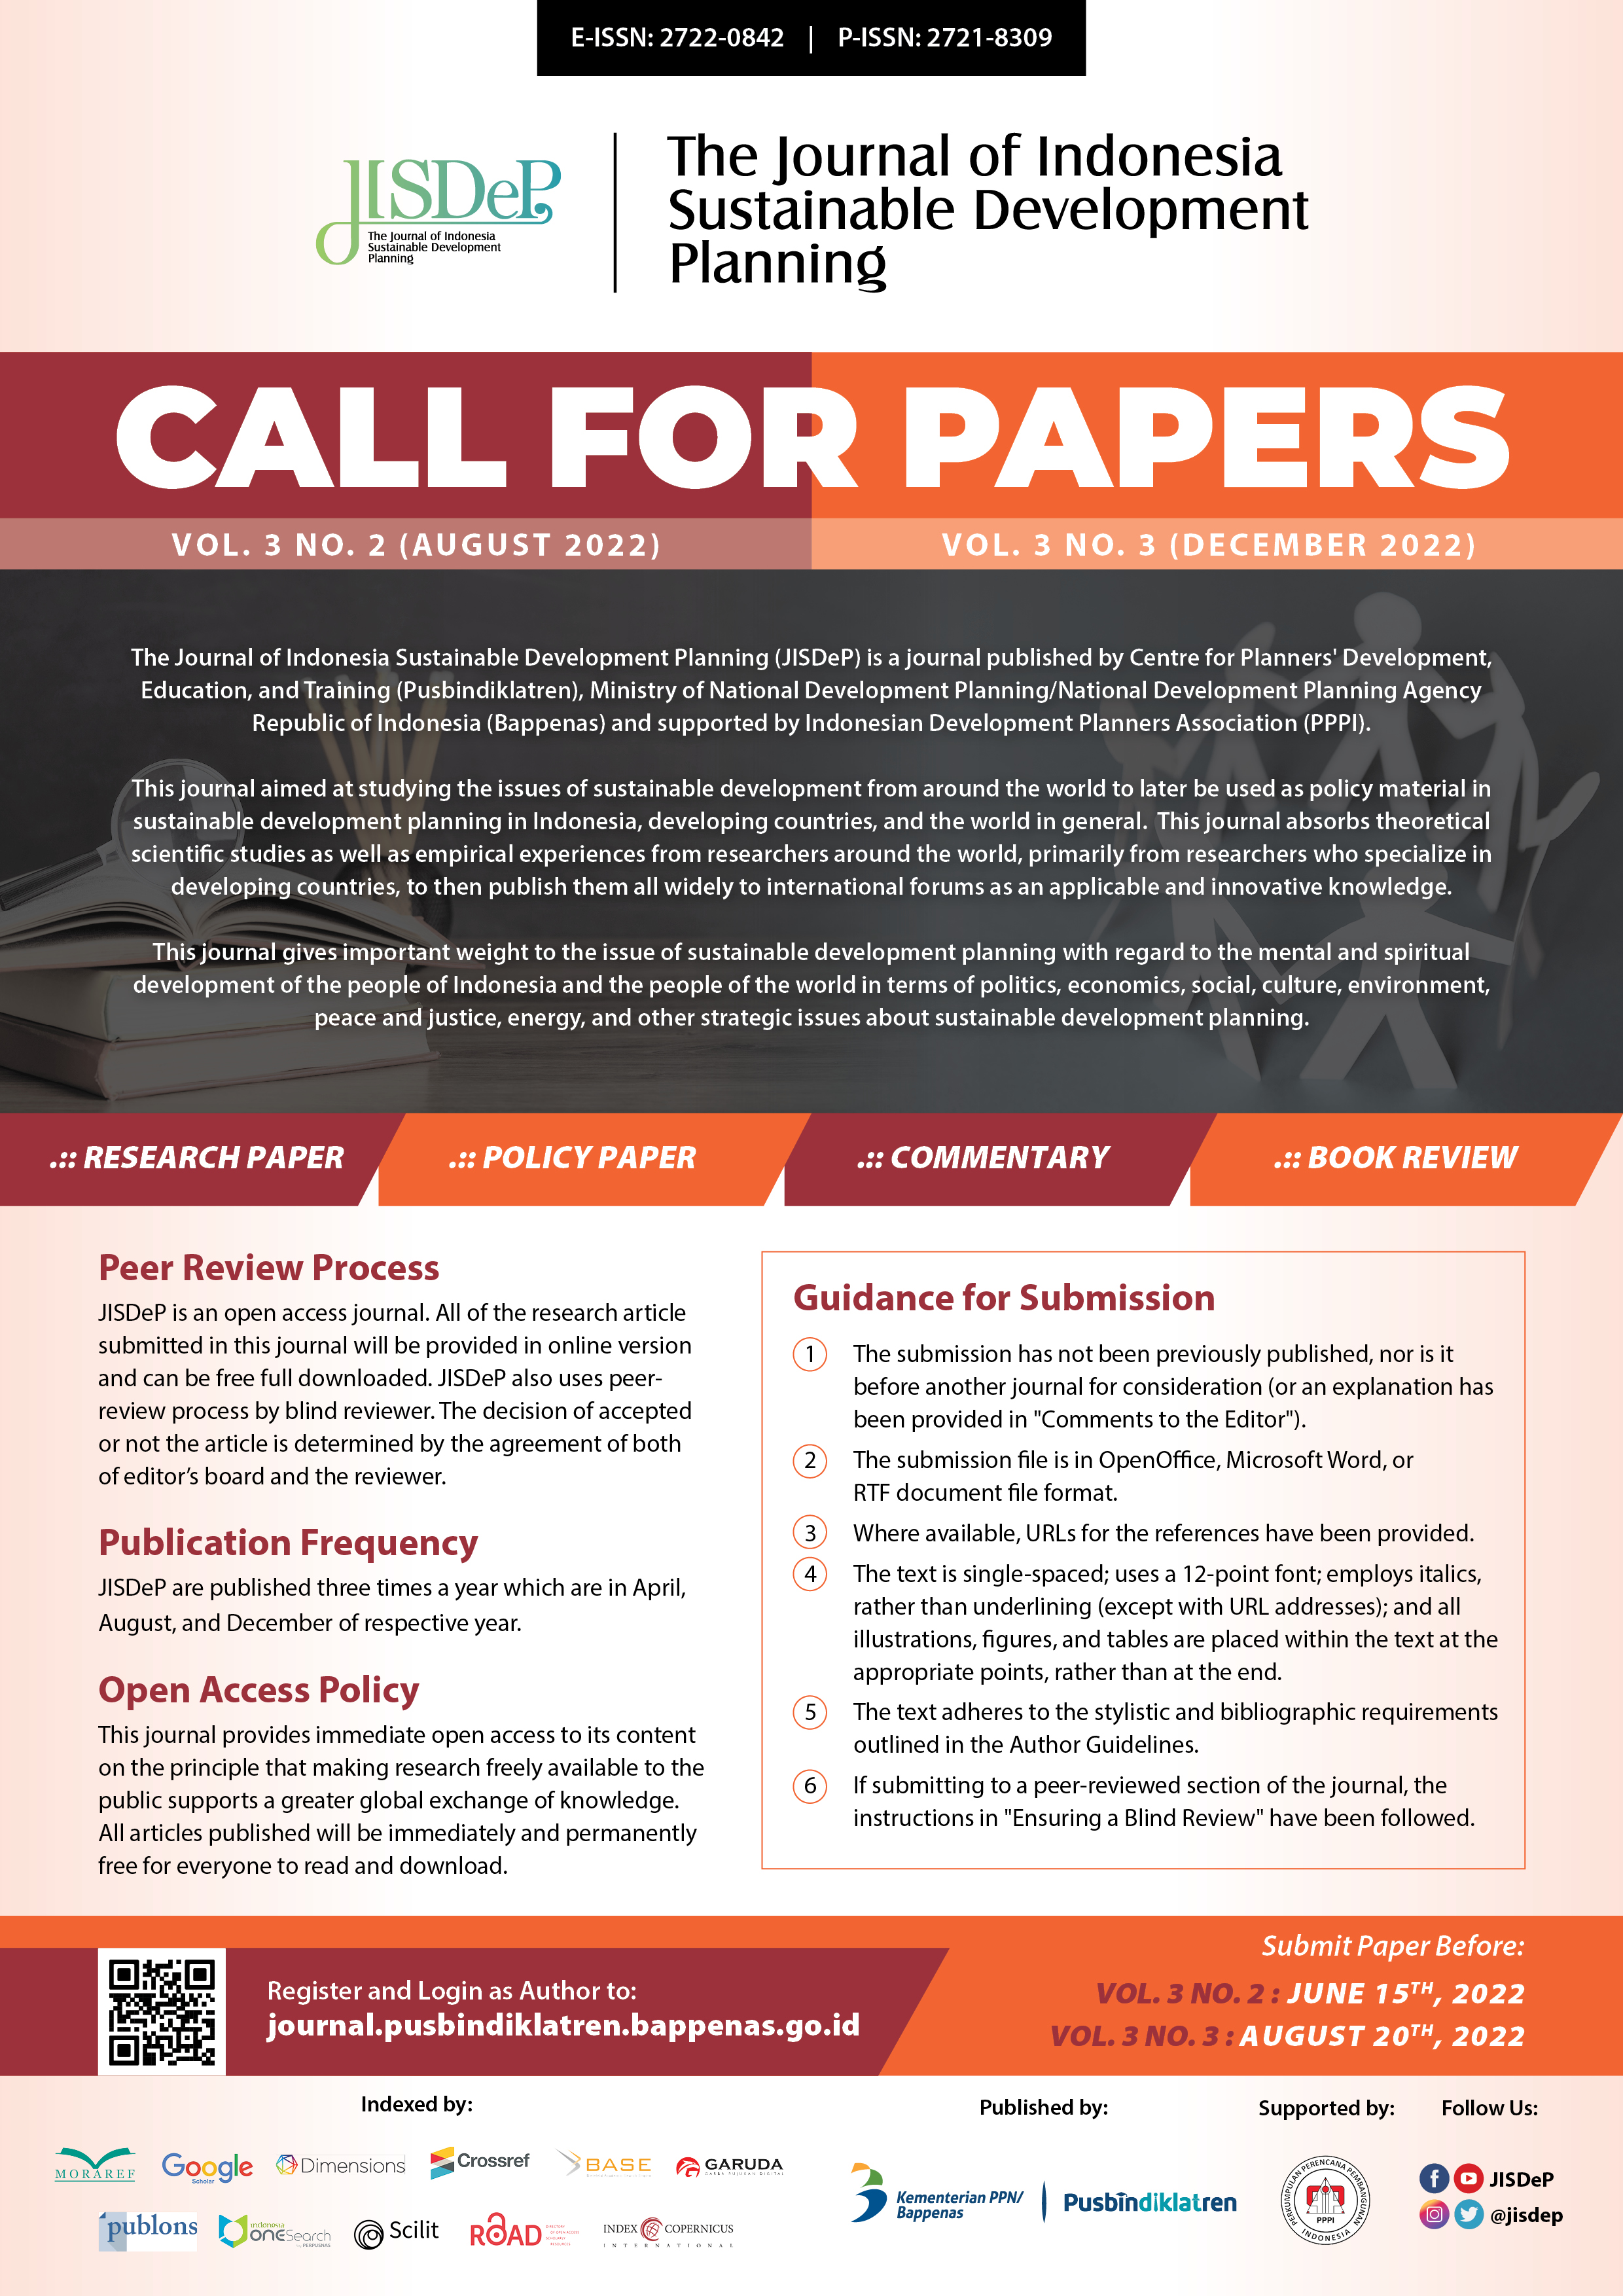 Poster Call for Paper JISDEP Vol 3 No. 2 & Vol. 3 No. 3.jpg